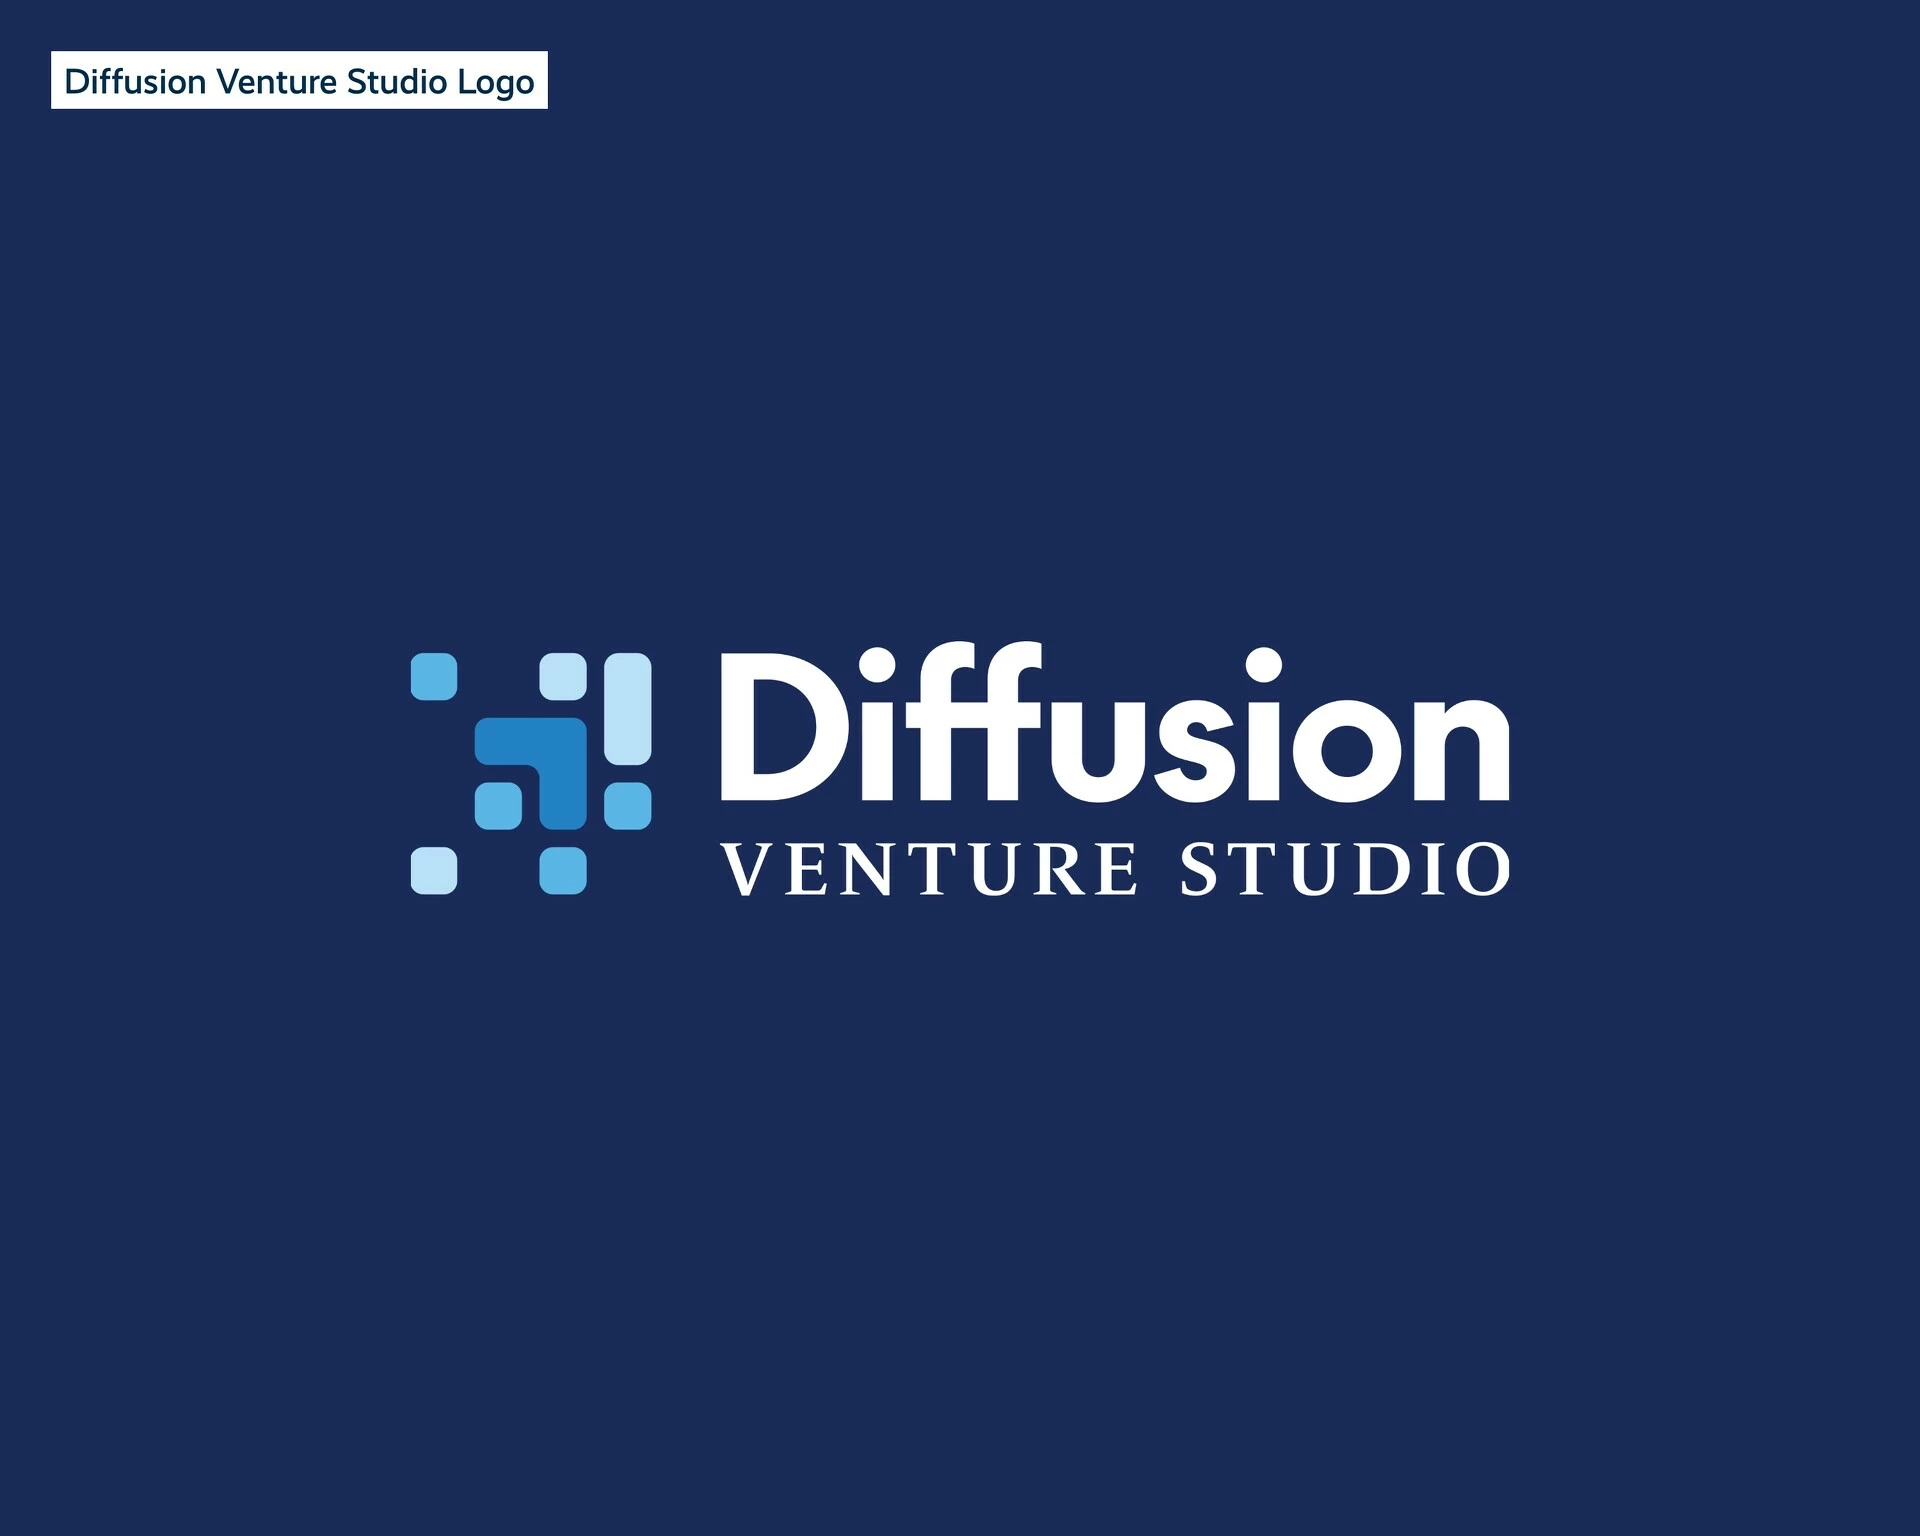 Diffusion Venture Studio Logo